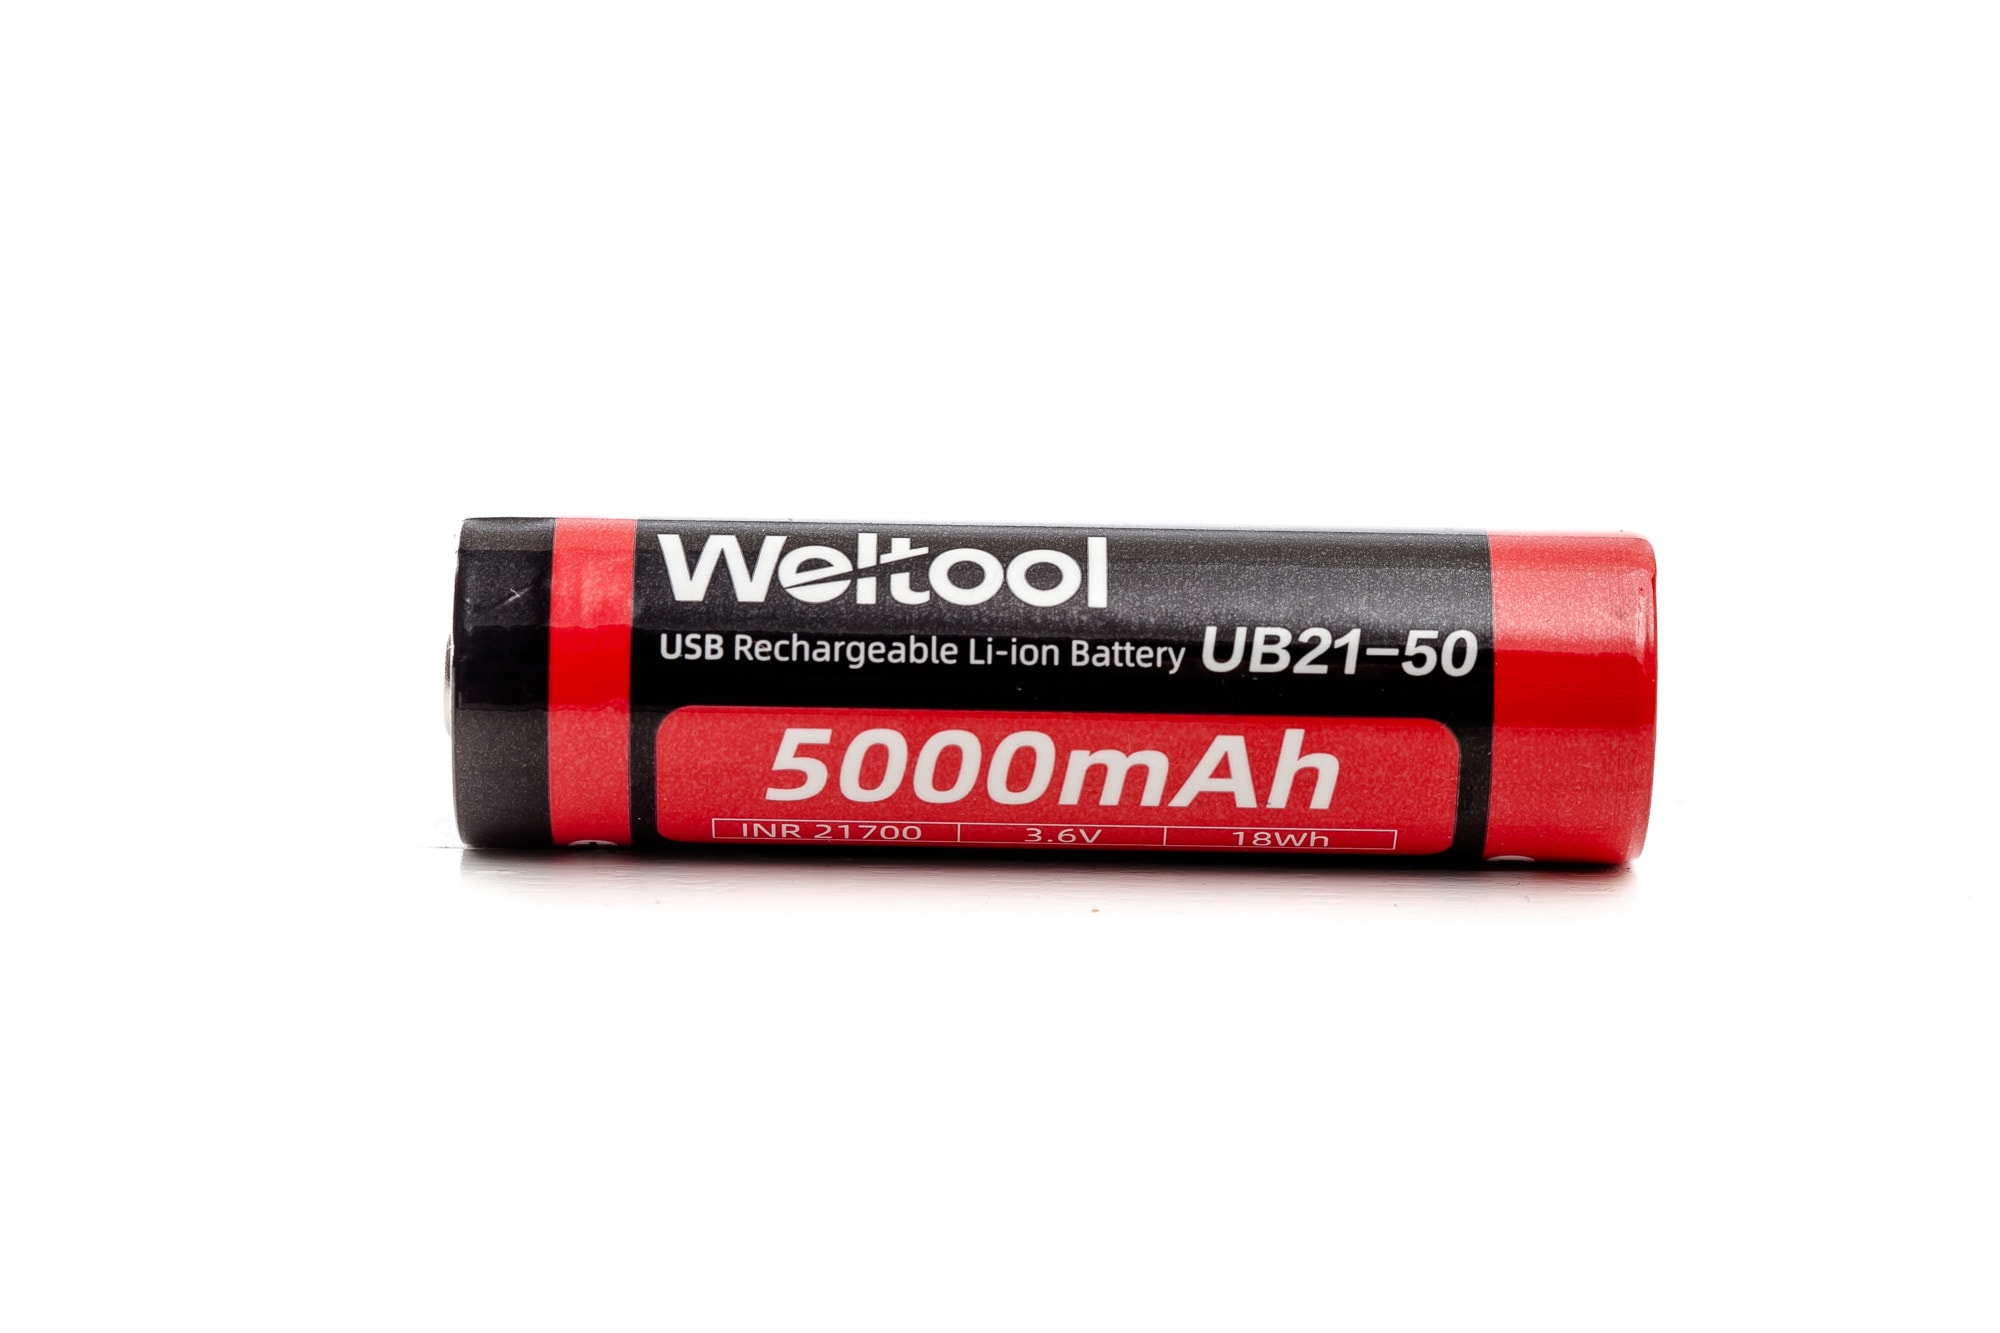 Weltool ub21 50 21700 battery